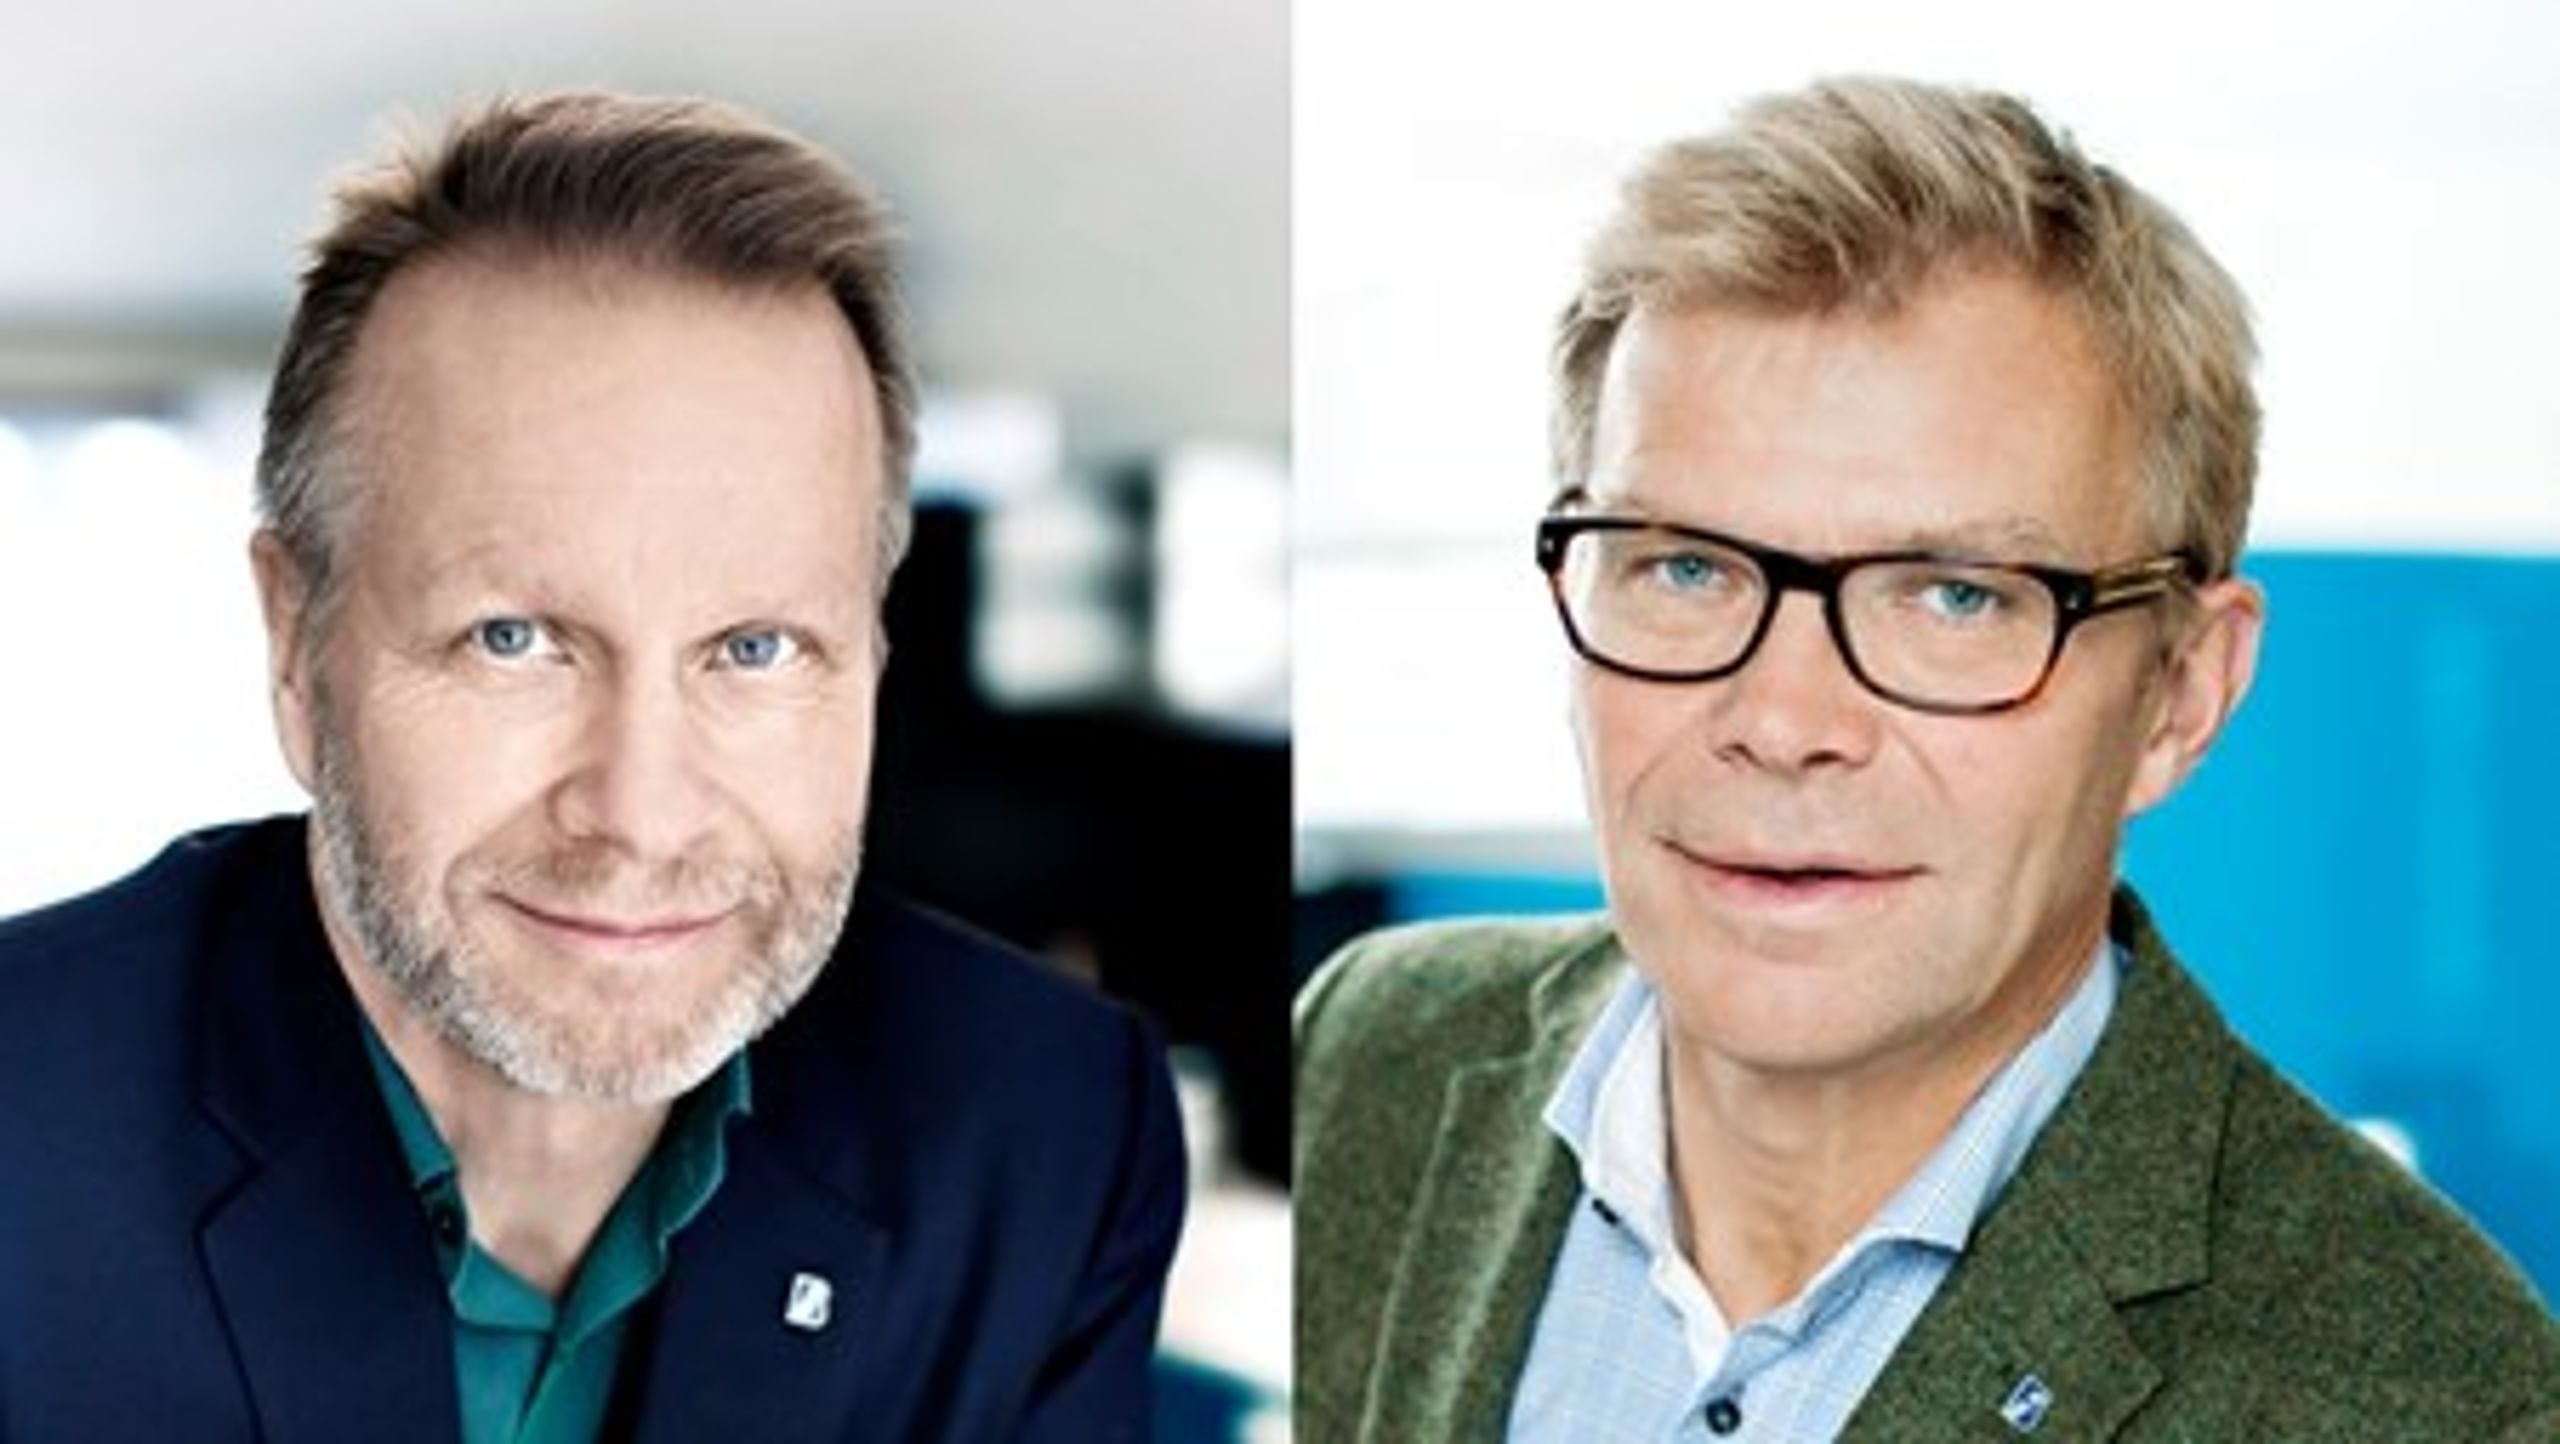 Björn Wellhagen, Näringspolitisk chef Sveriges Byggindustrier och&nbsp;Ola Månsson, vd Sveriges Byggindustrier